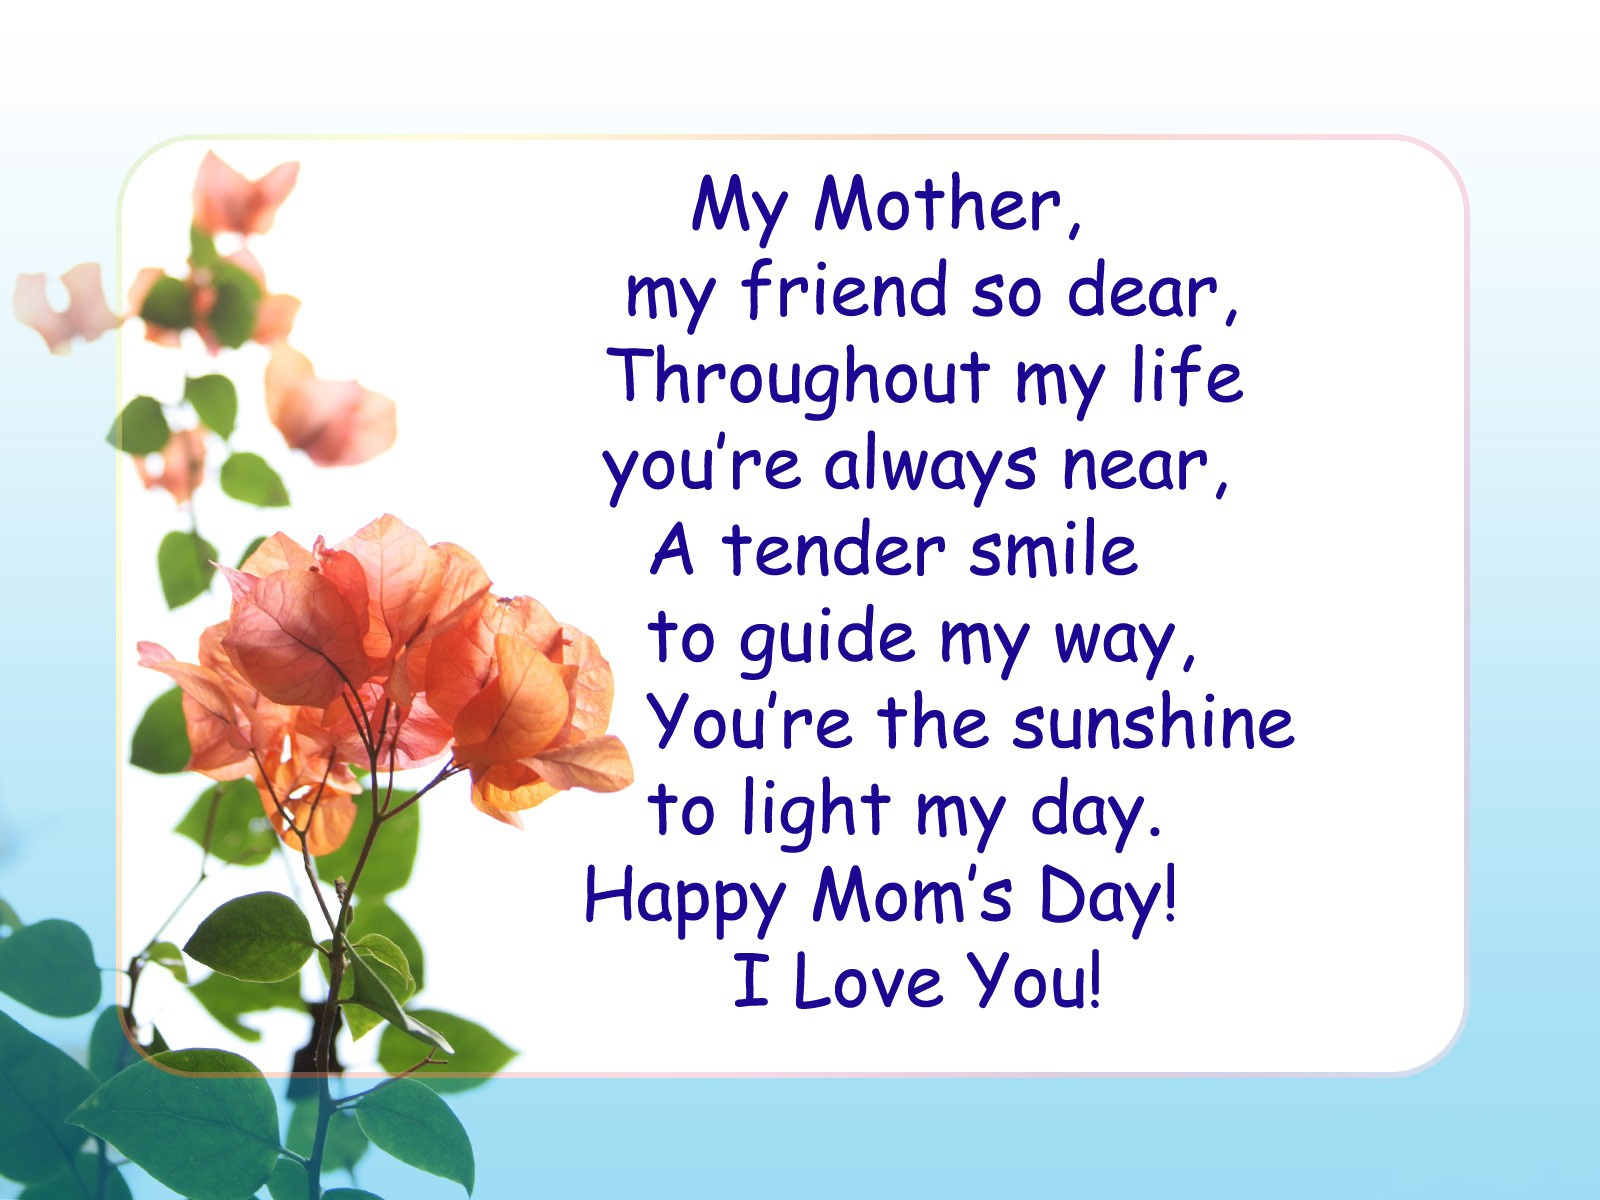 Ее мама на английском языке. Стихи на английском. Стих про маму на английском языке. Поздравление для мамы на английском языке. Стих на день матери на английском.